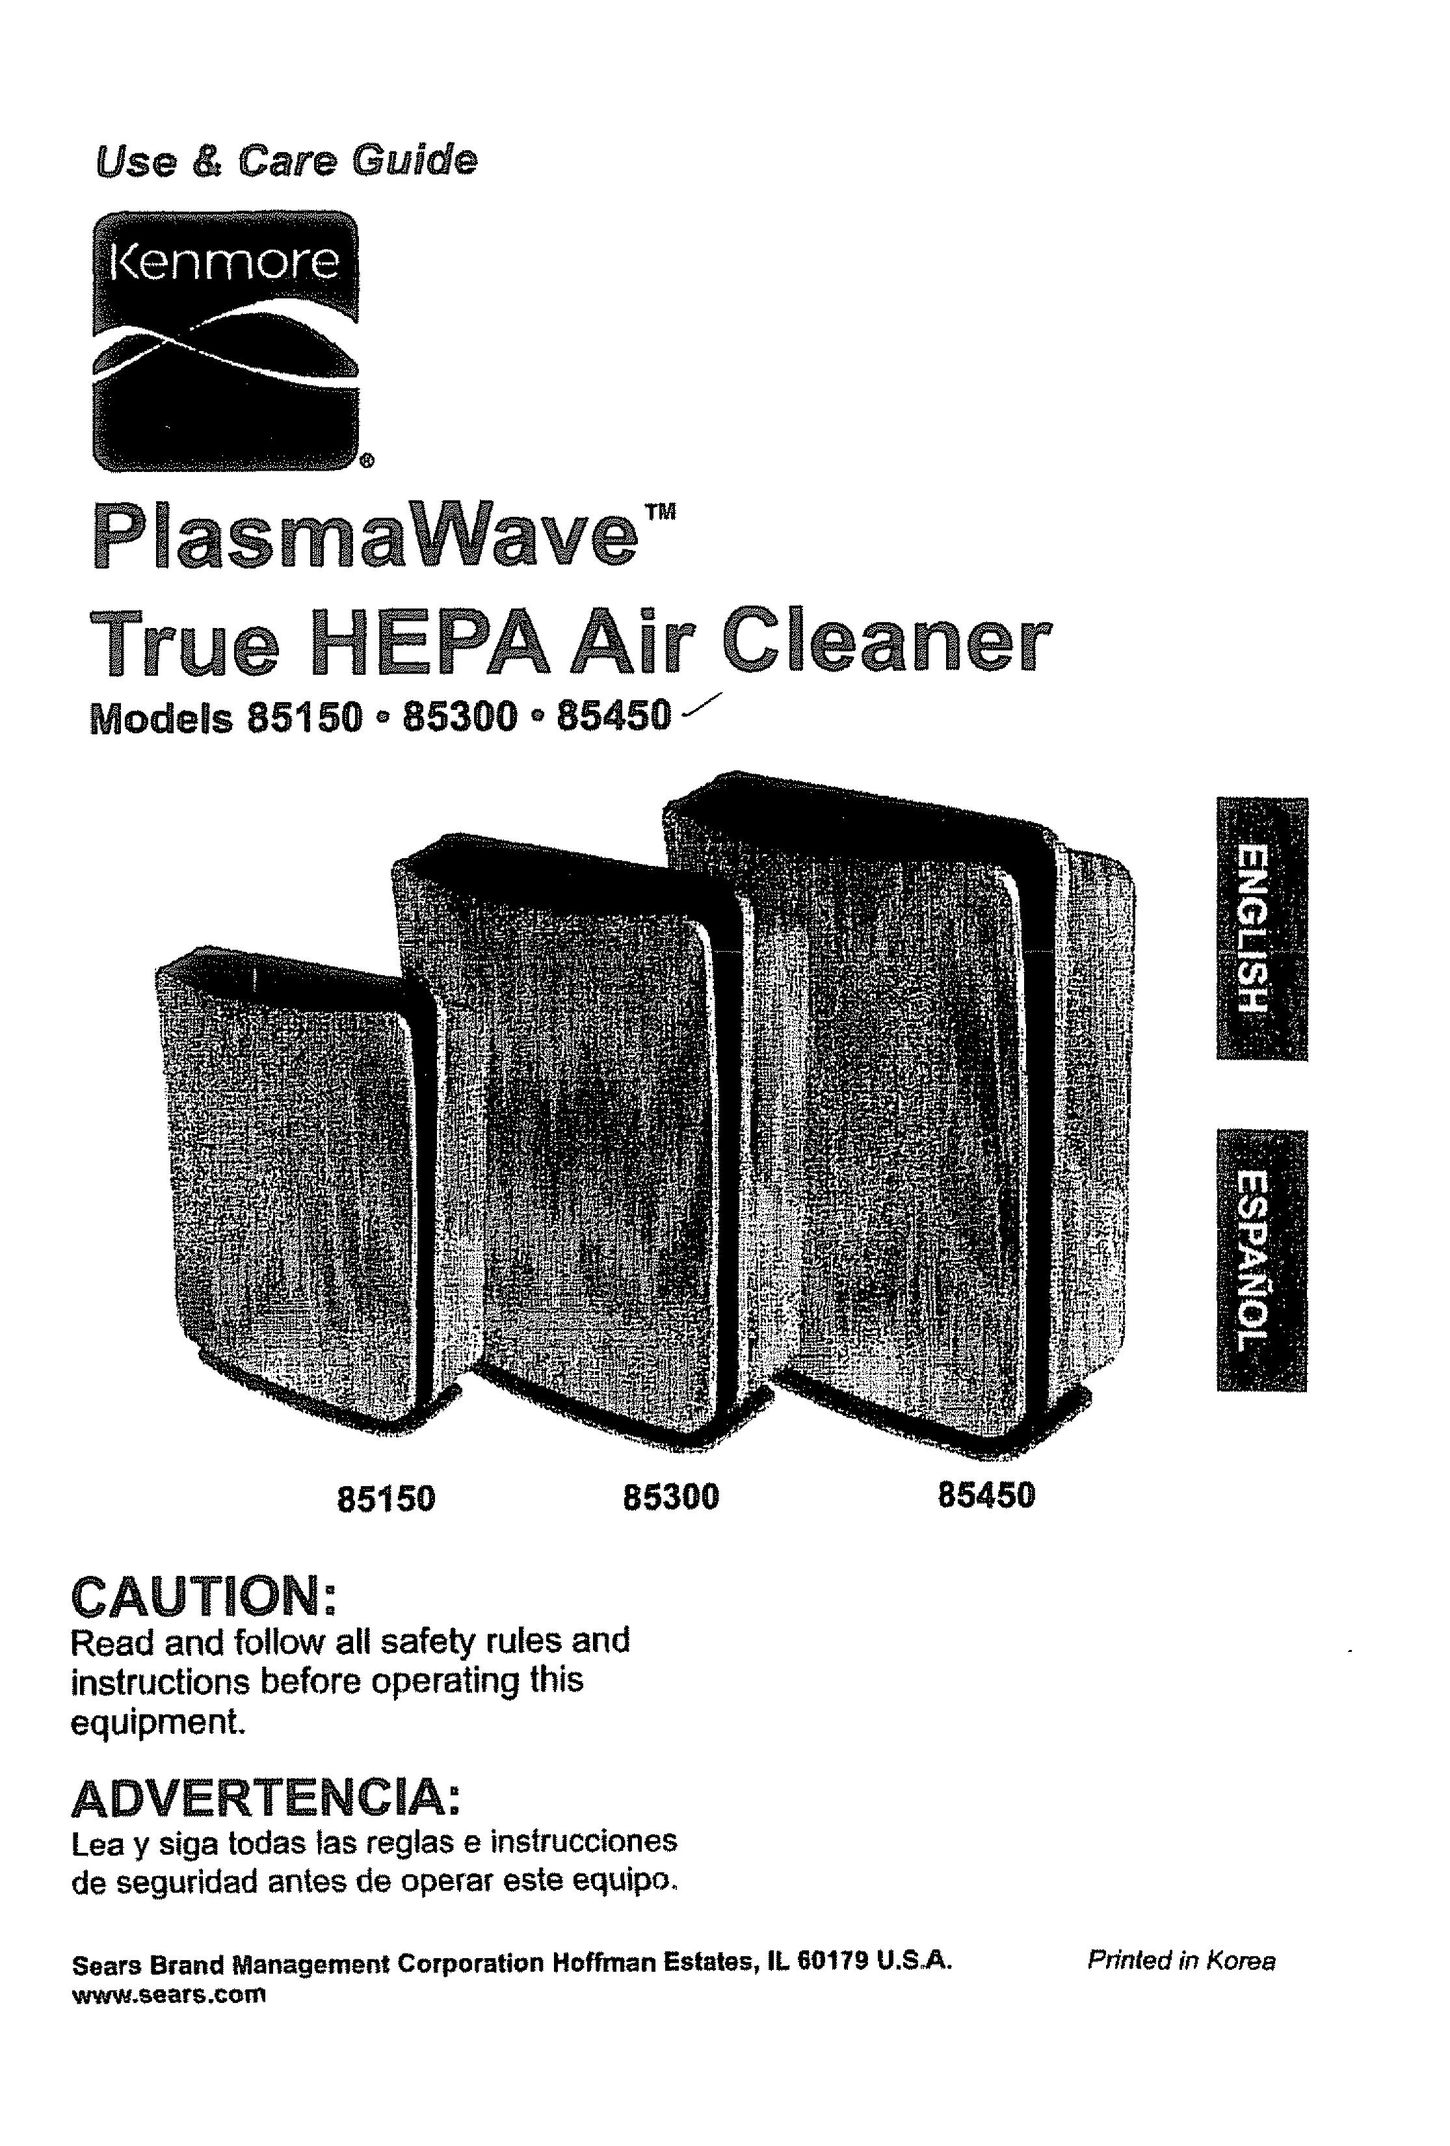 Kenmore 85300 Air Cleaner User Manual